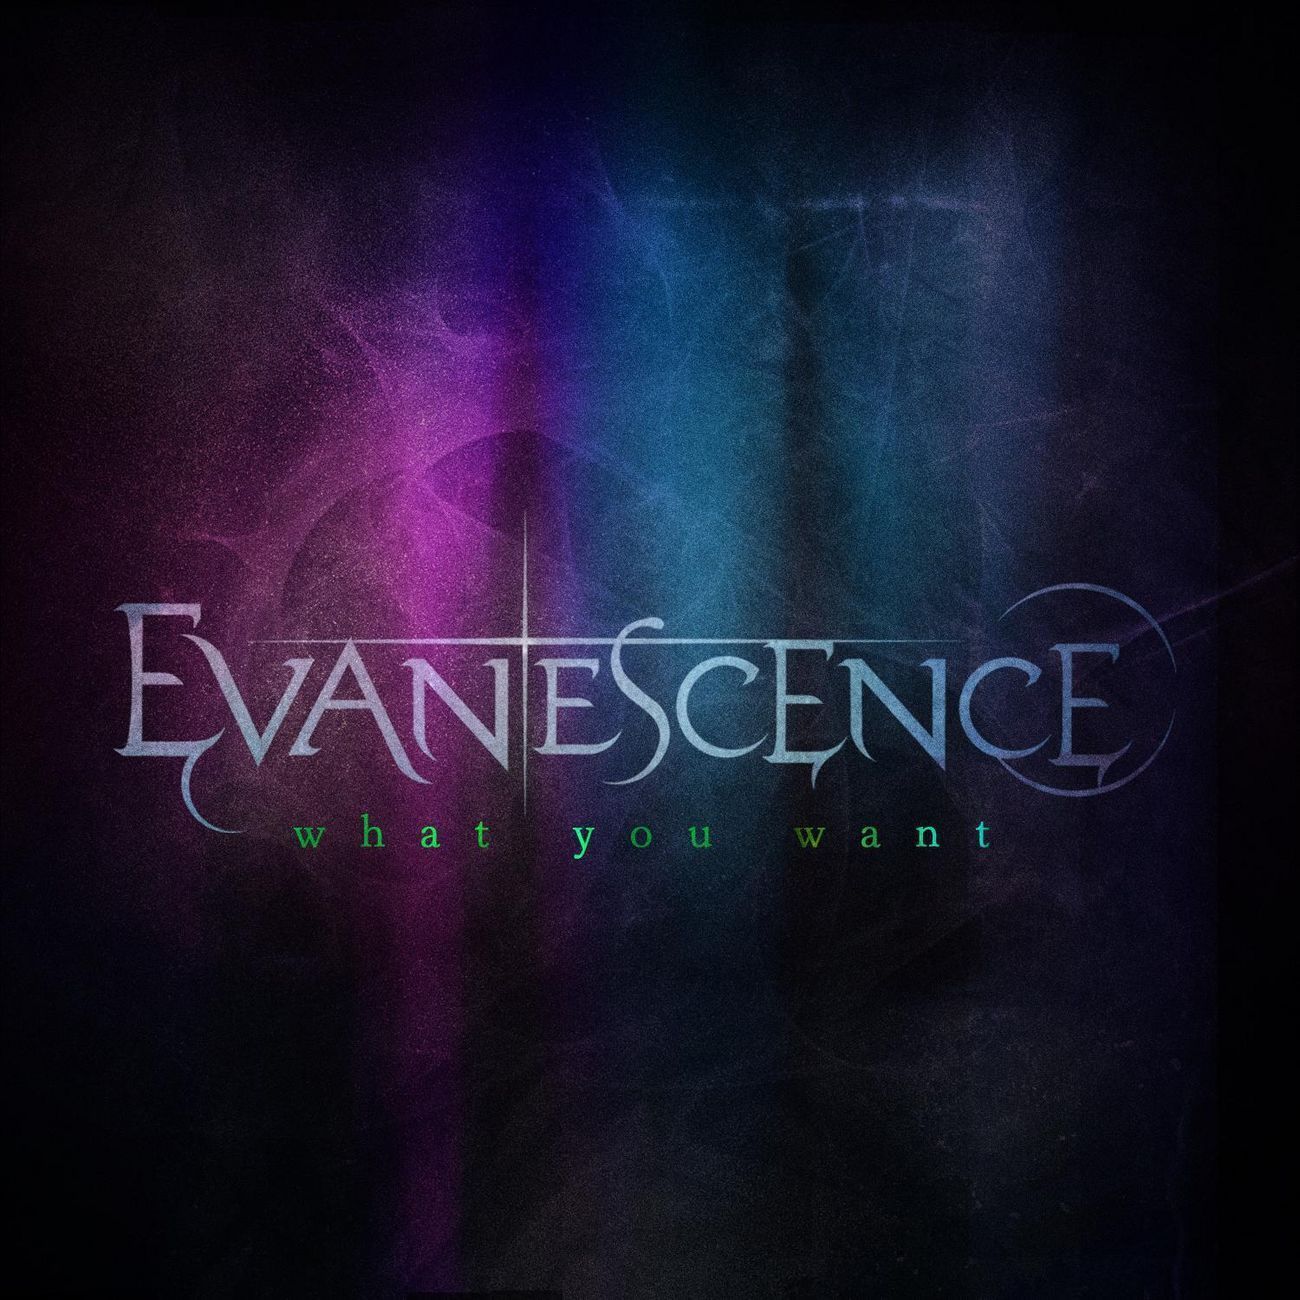 evanescence wasted on you lyrics